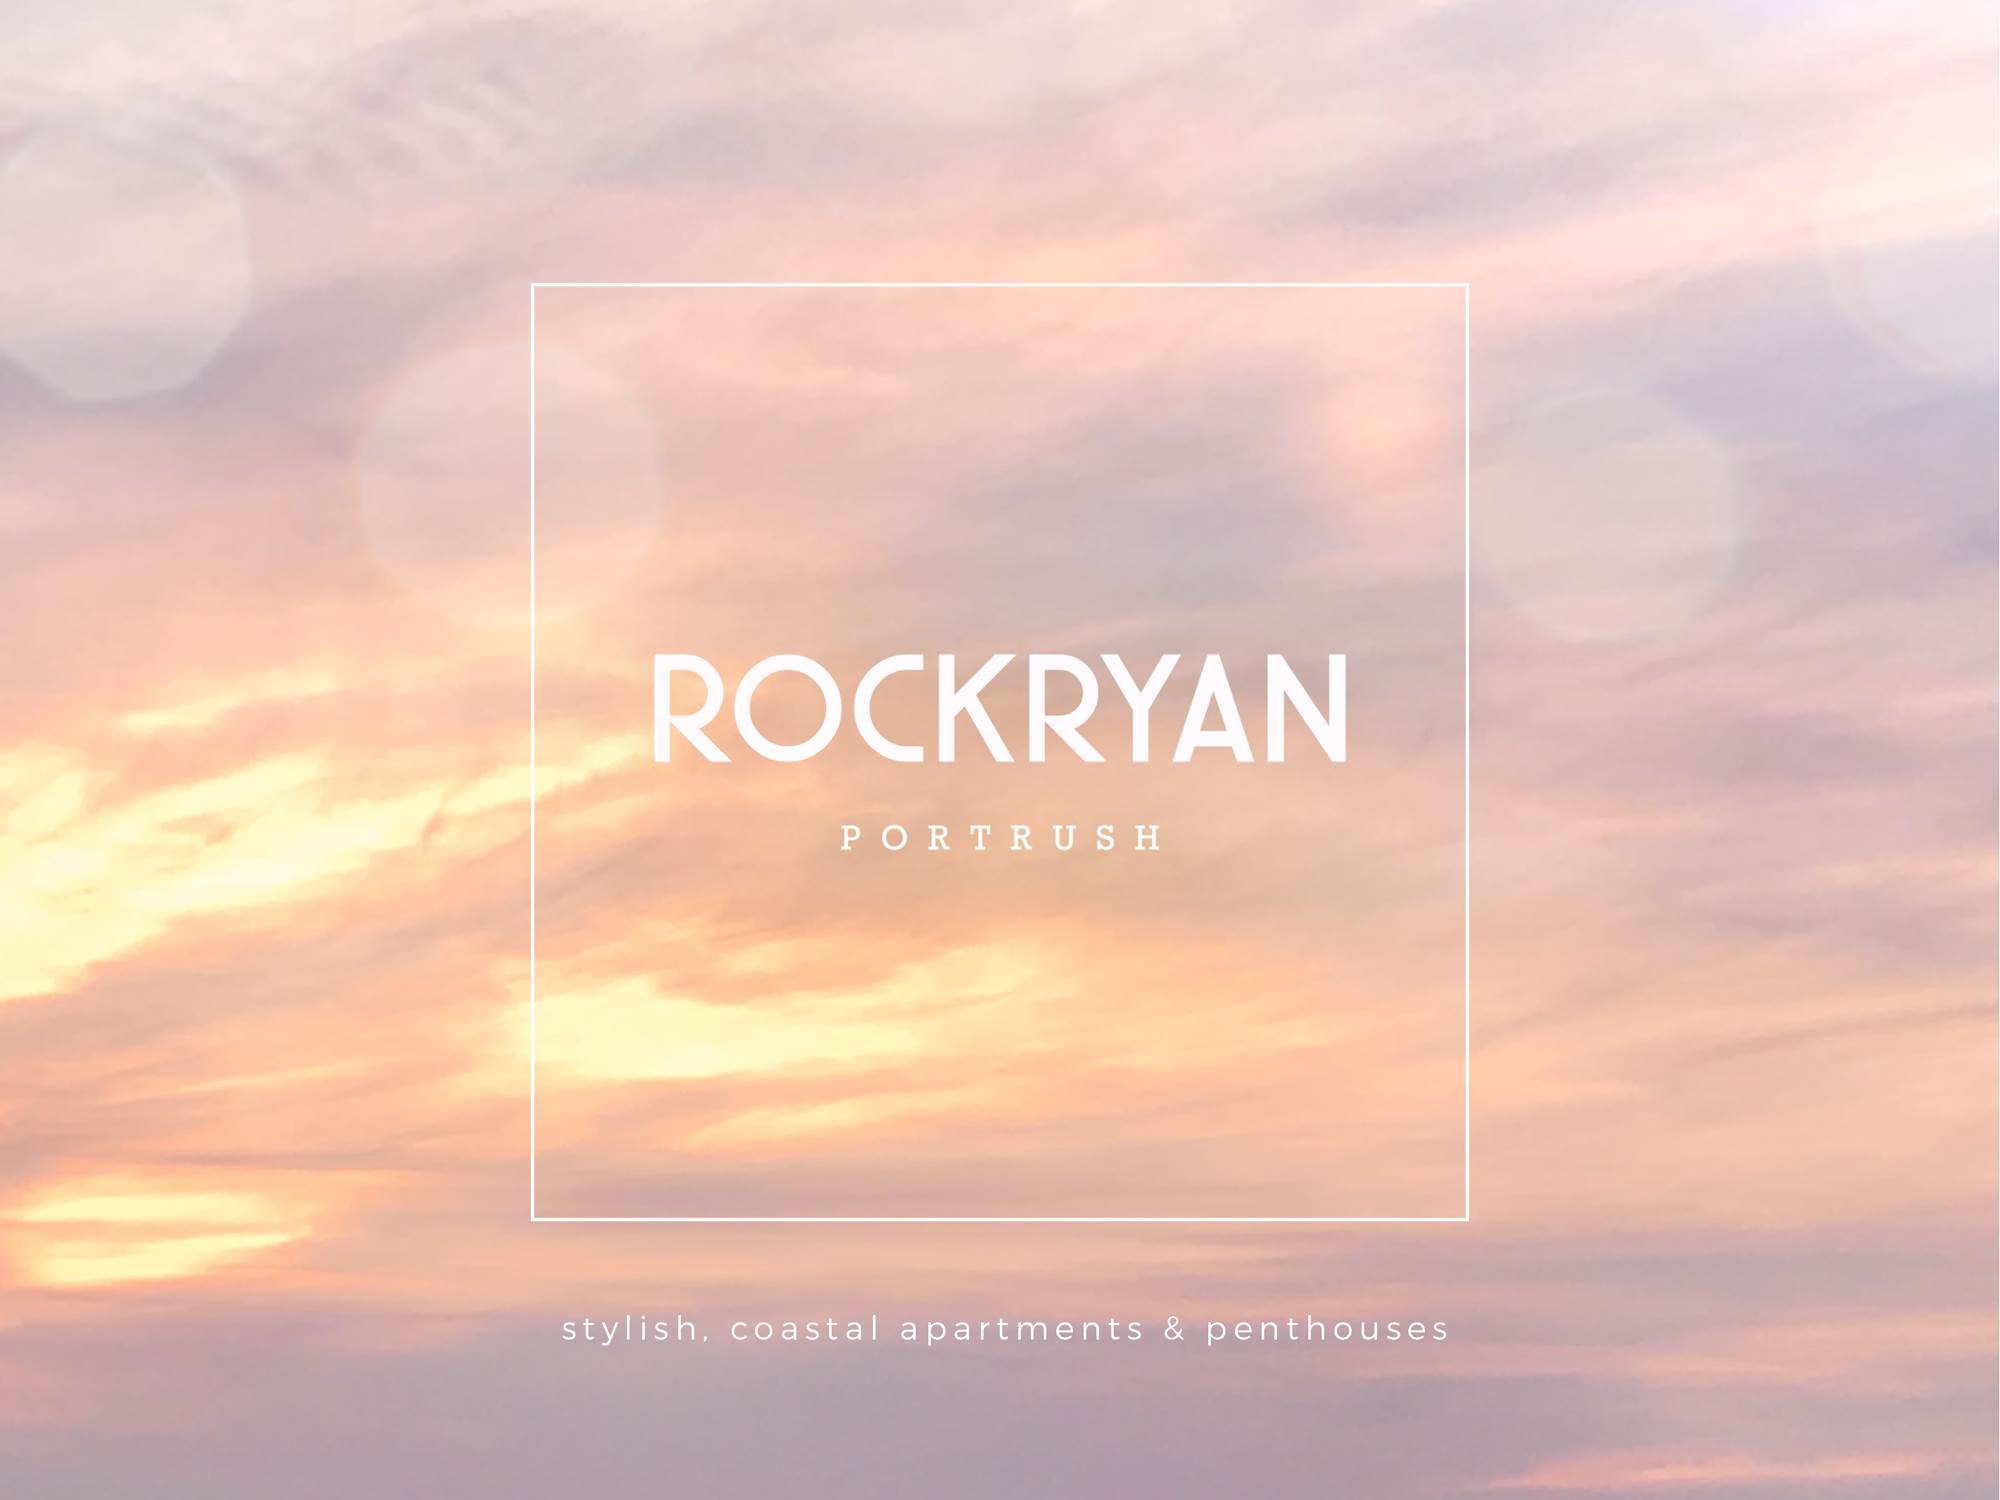 1 Rockryan